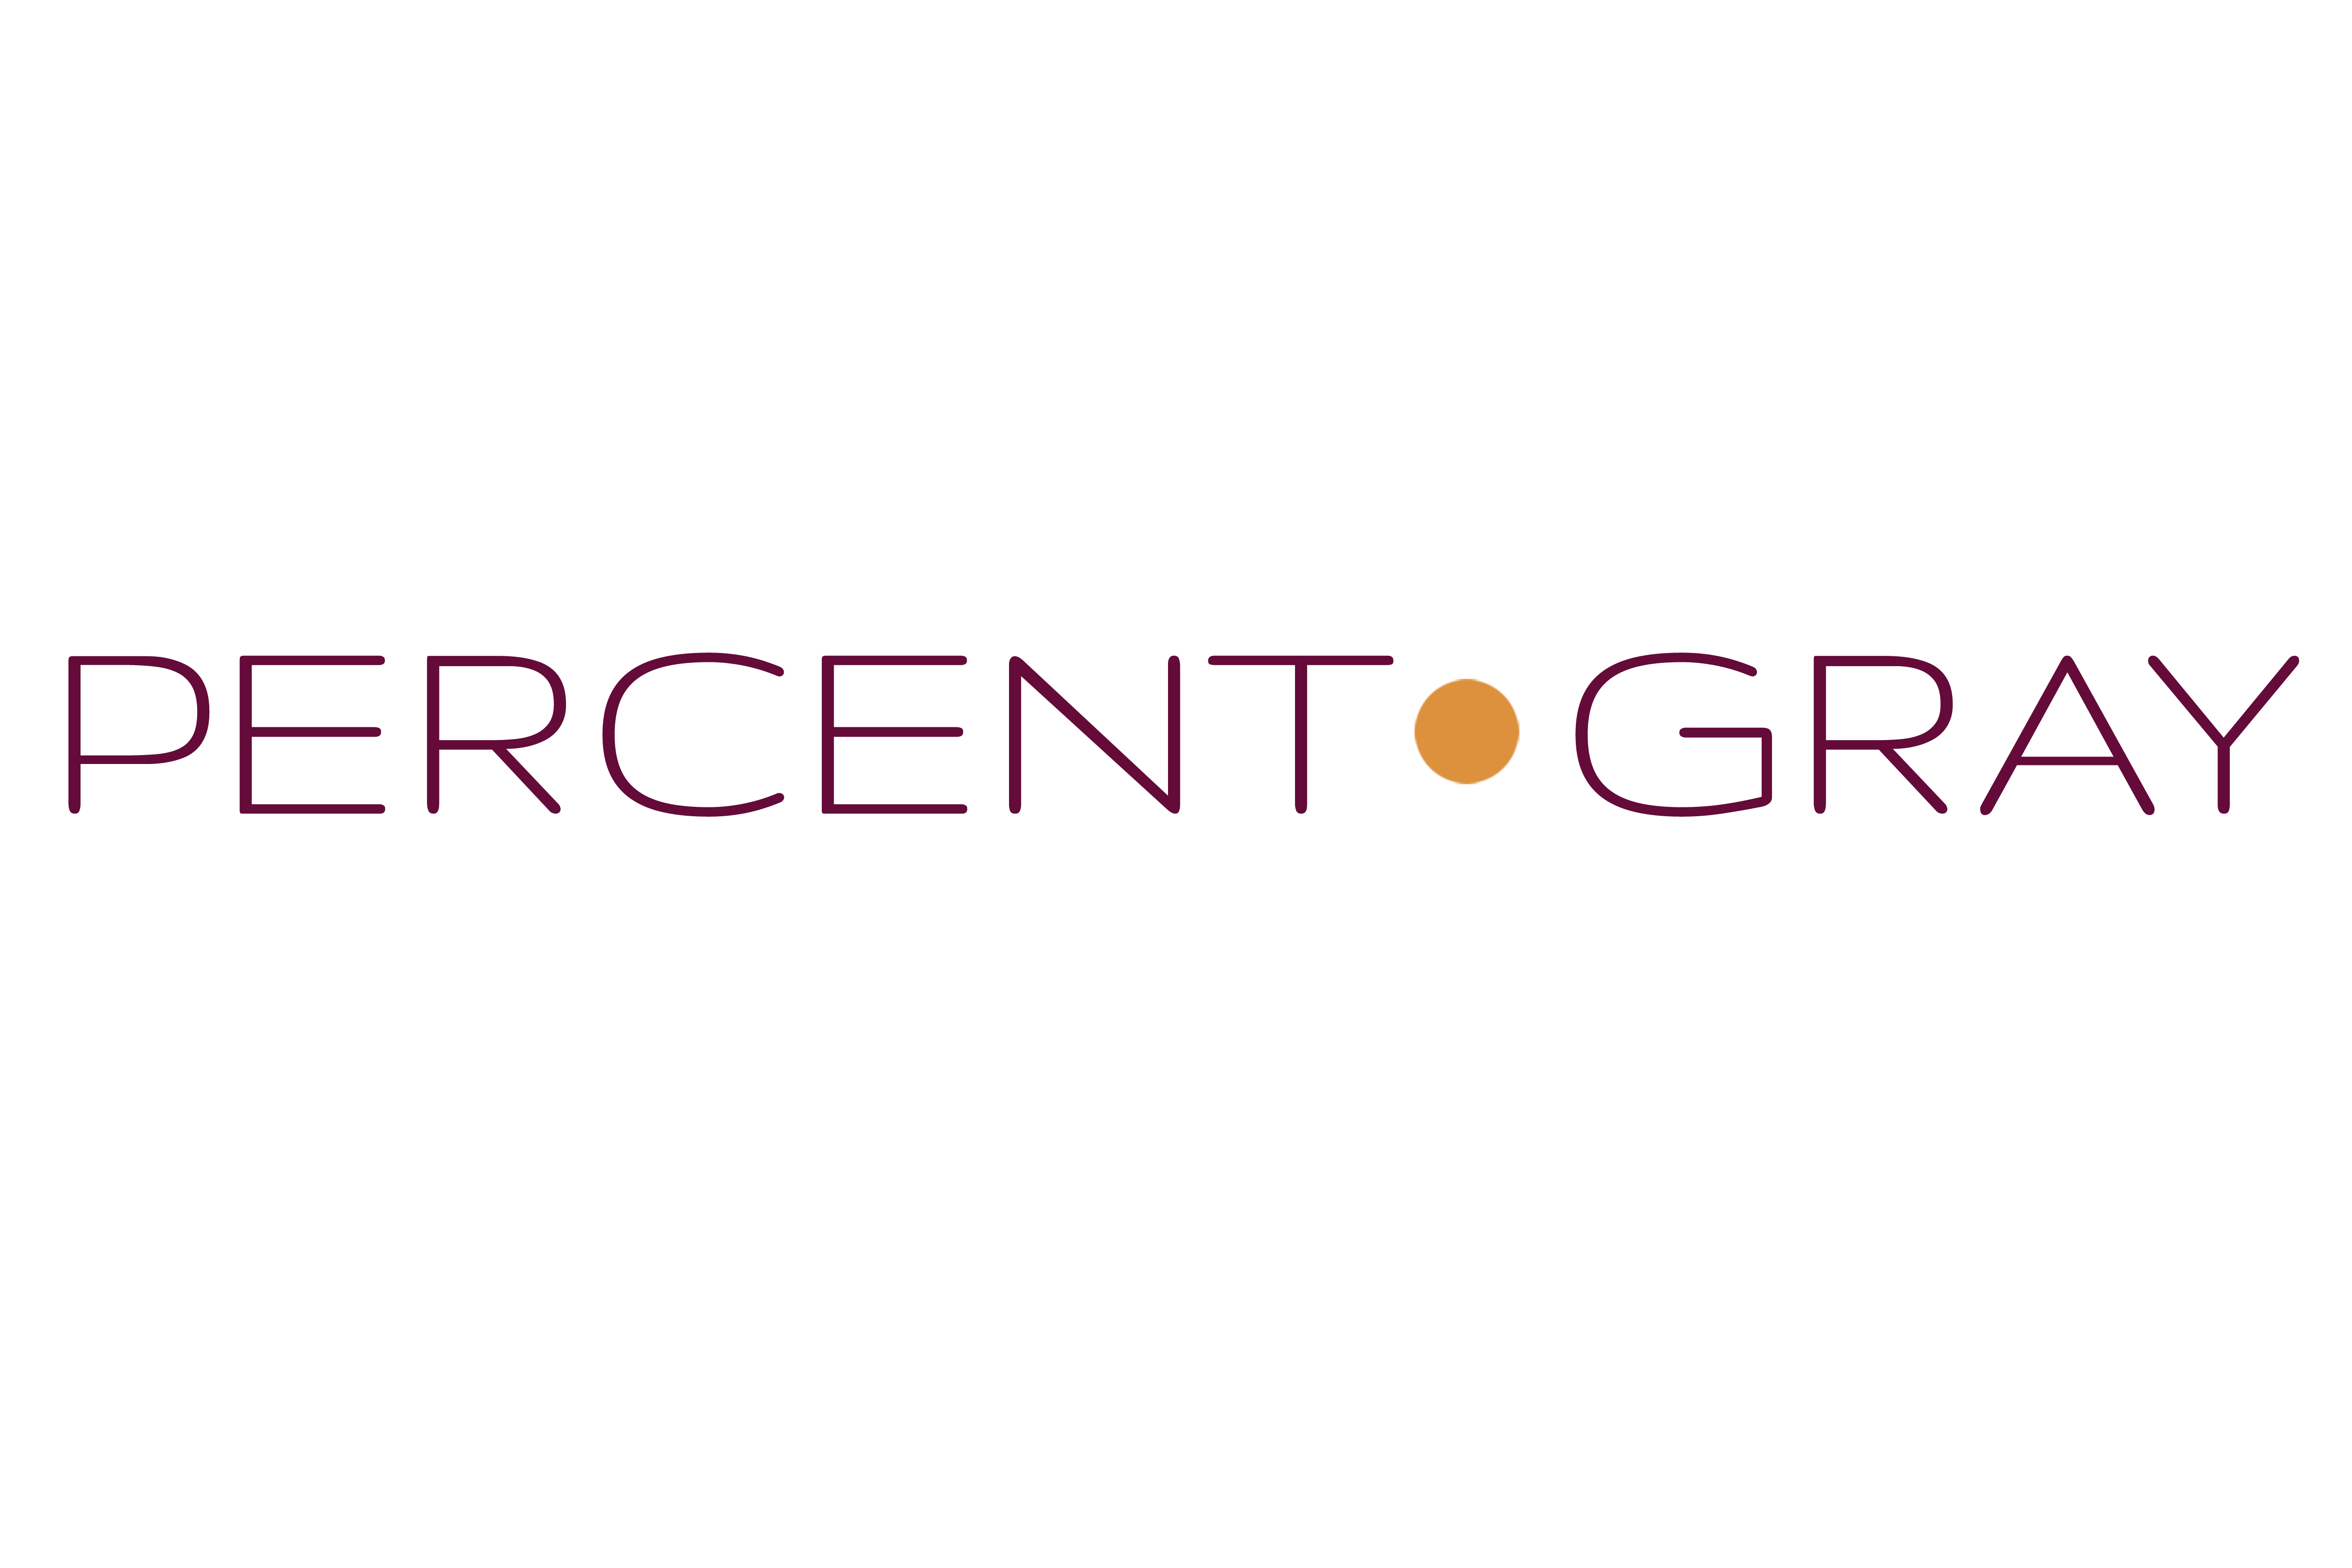 Download Percent Gray Logo